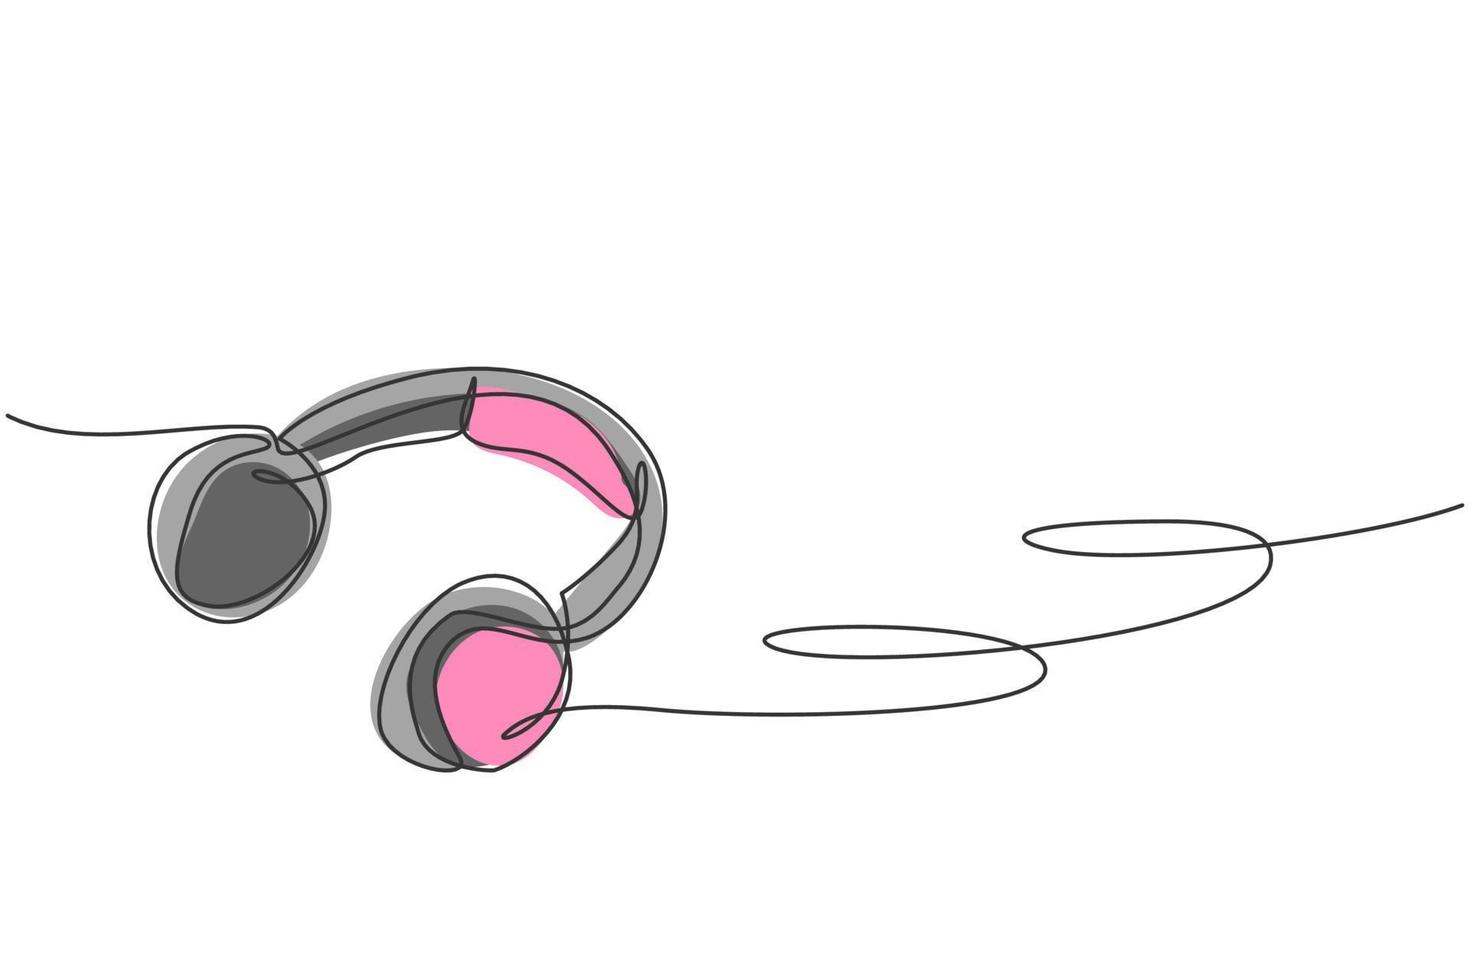 eine durchgehende Strichzeichnung des Kopfhörers auf dem Boden aus der Draufsicht. Aufnahme von musikalischen Kopfhörer-Gadget-Vorlagenkonzept. trendige Single-Line-Draw-Design-Vektorgrafik-Illustration vektor